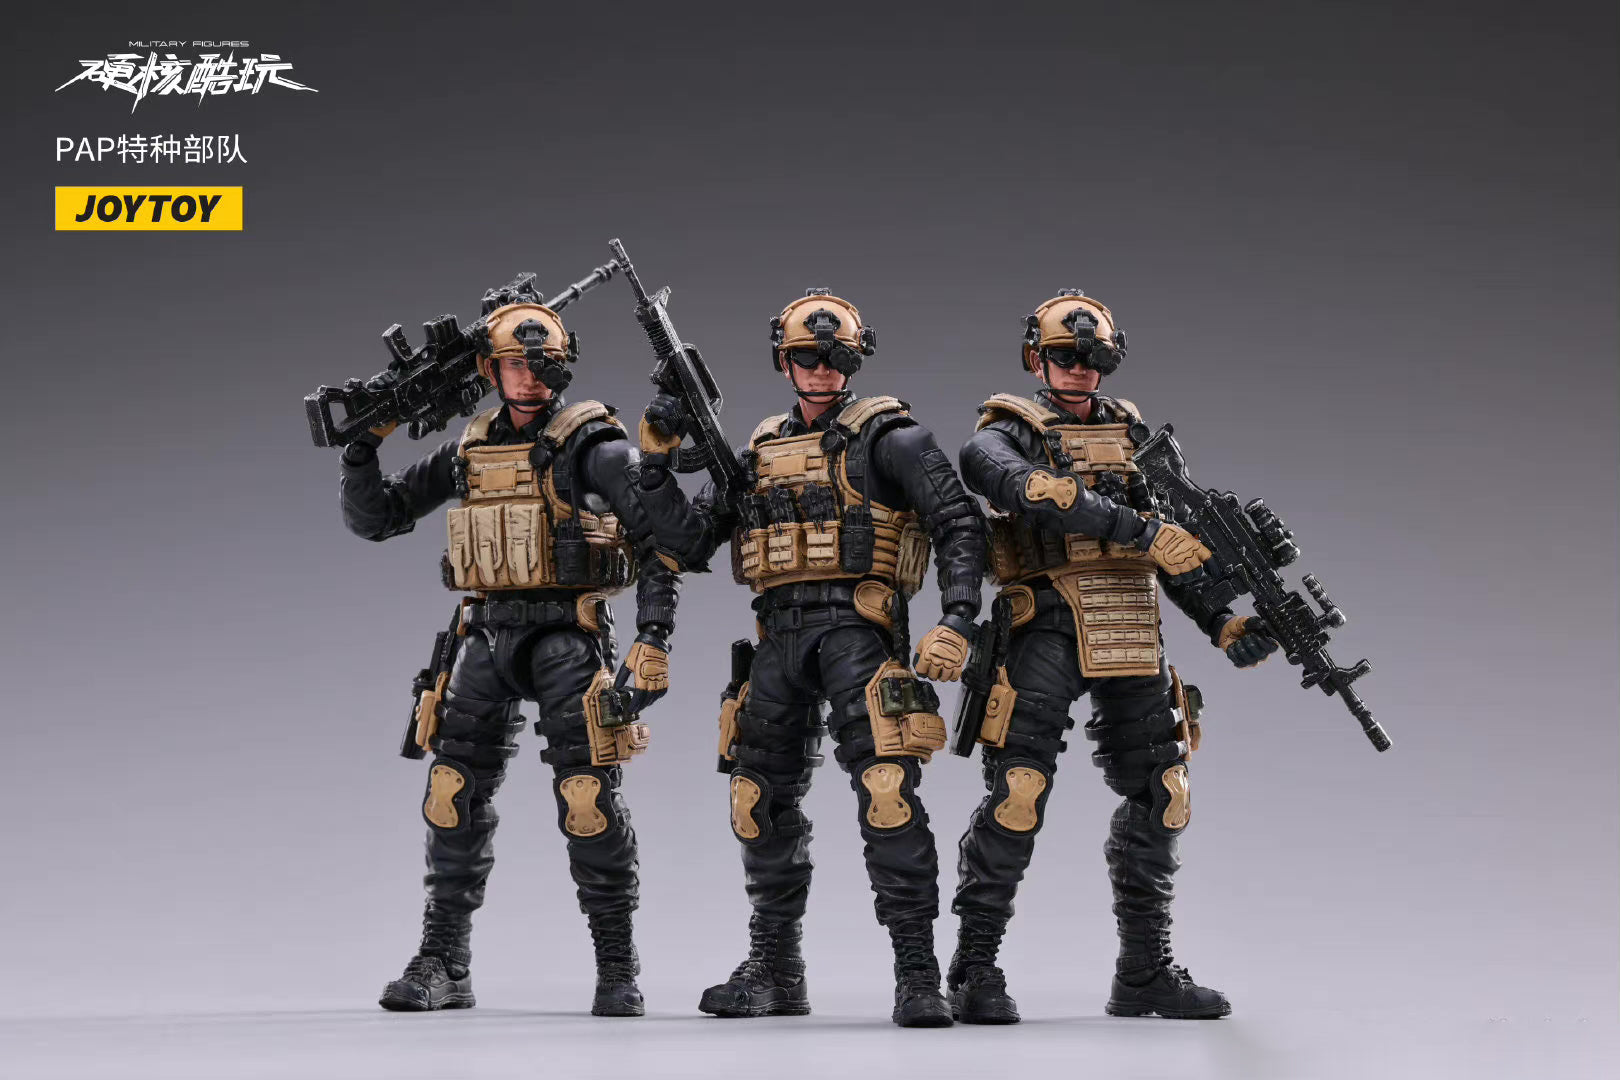 JOYTOY 1/18 Action Figure (3PCS/SET) PAP Special Forces Collection Military Model